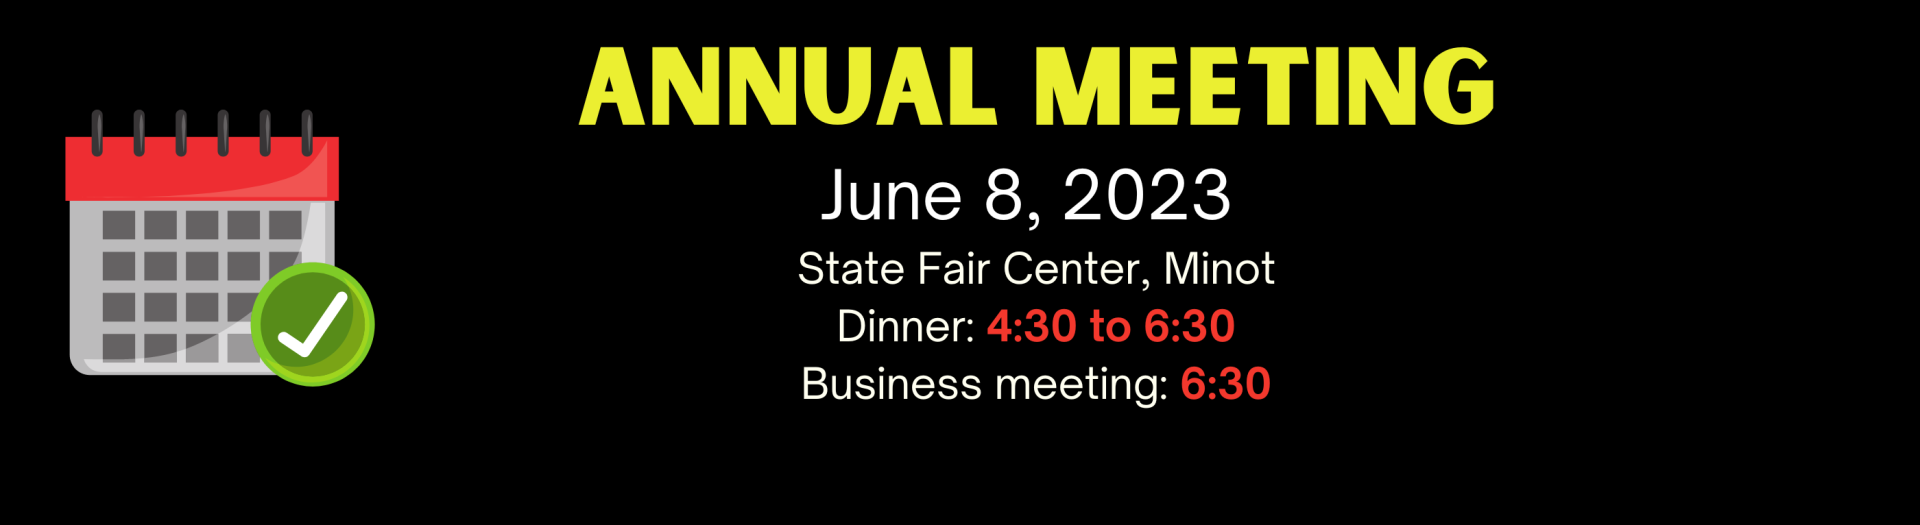 Verendrye Annual Meeting June 8th